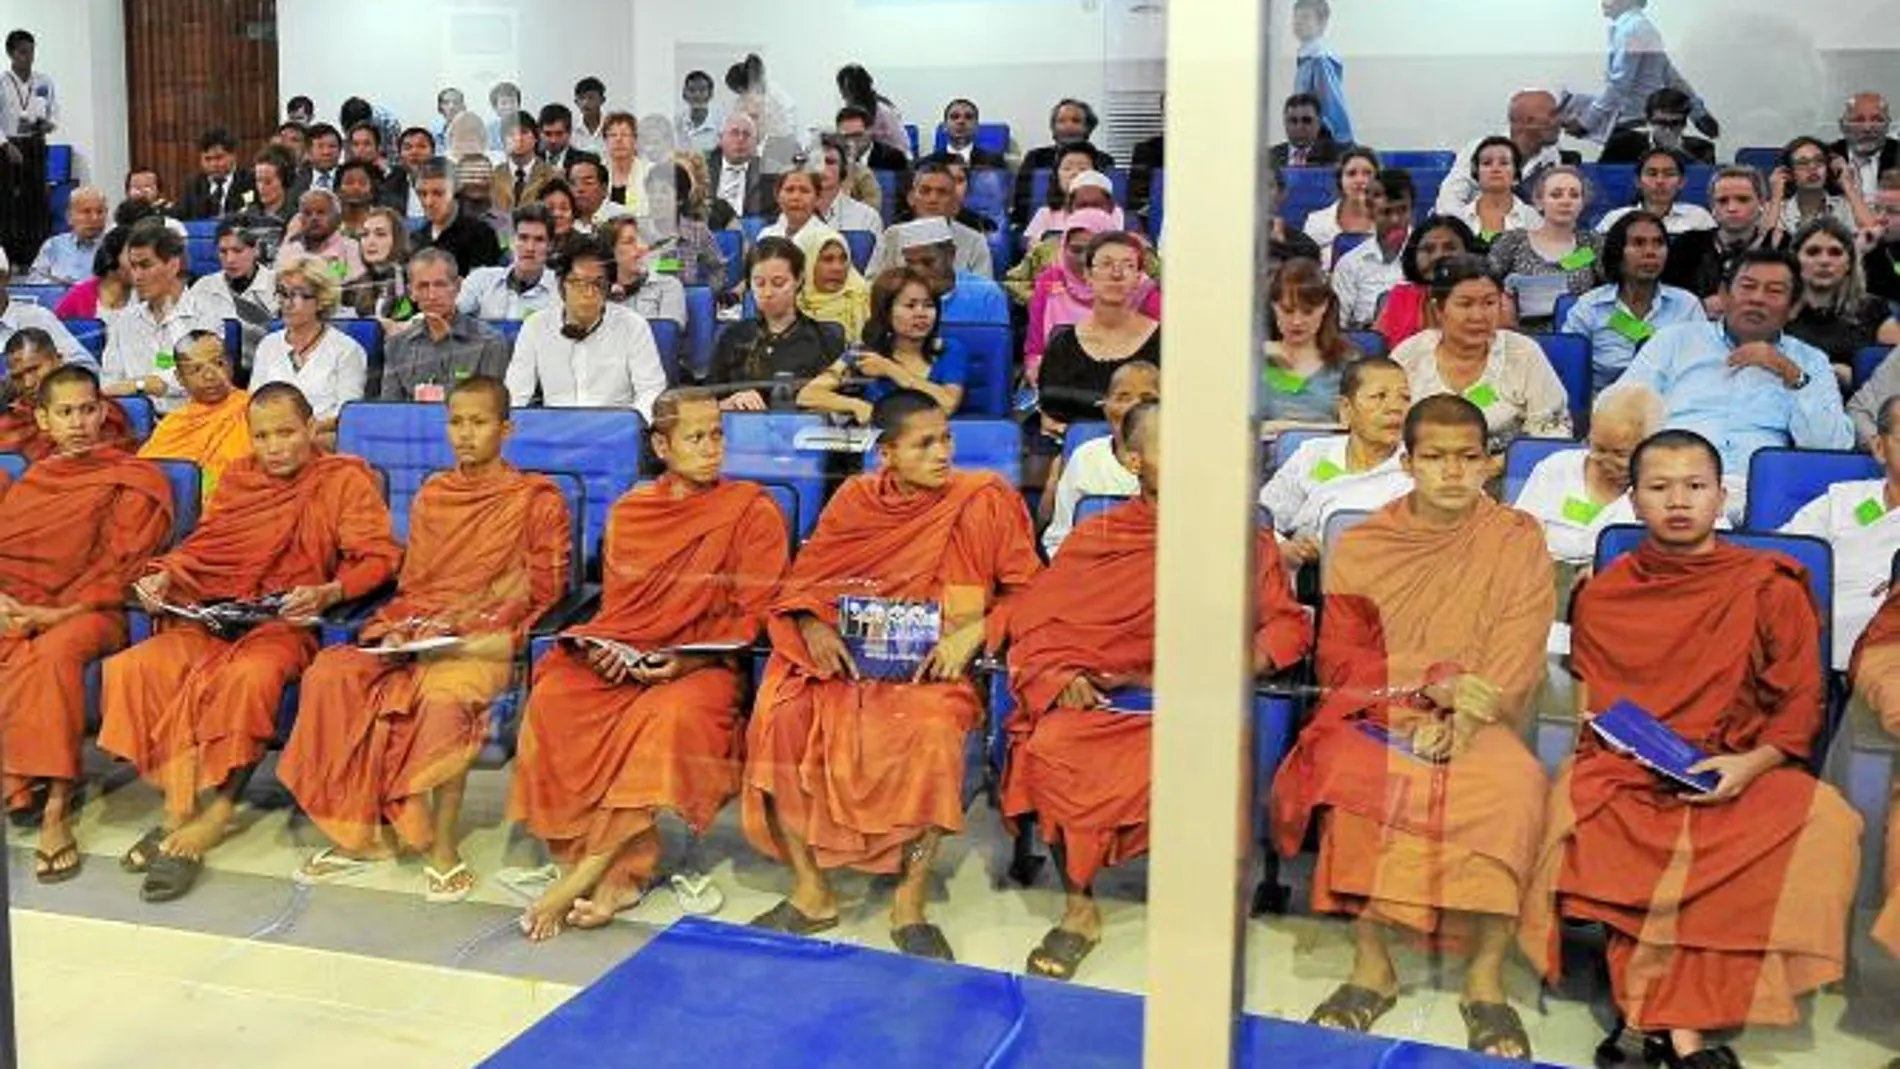 Buena parte del jurado son monjes budistas